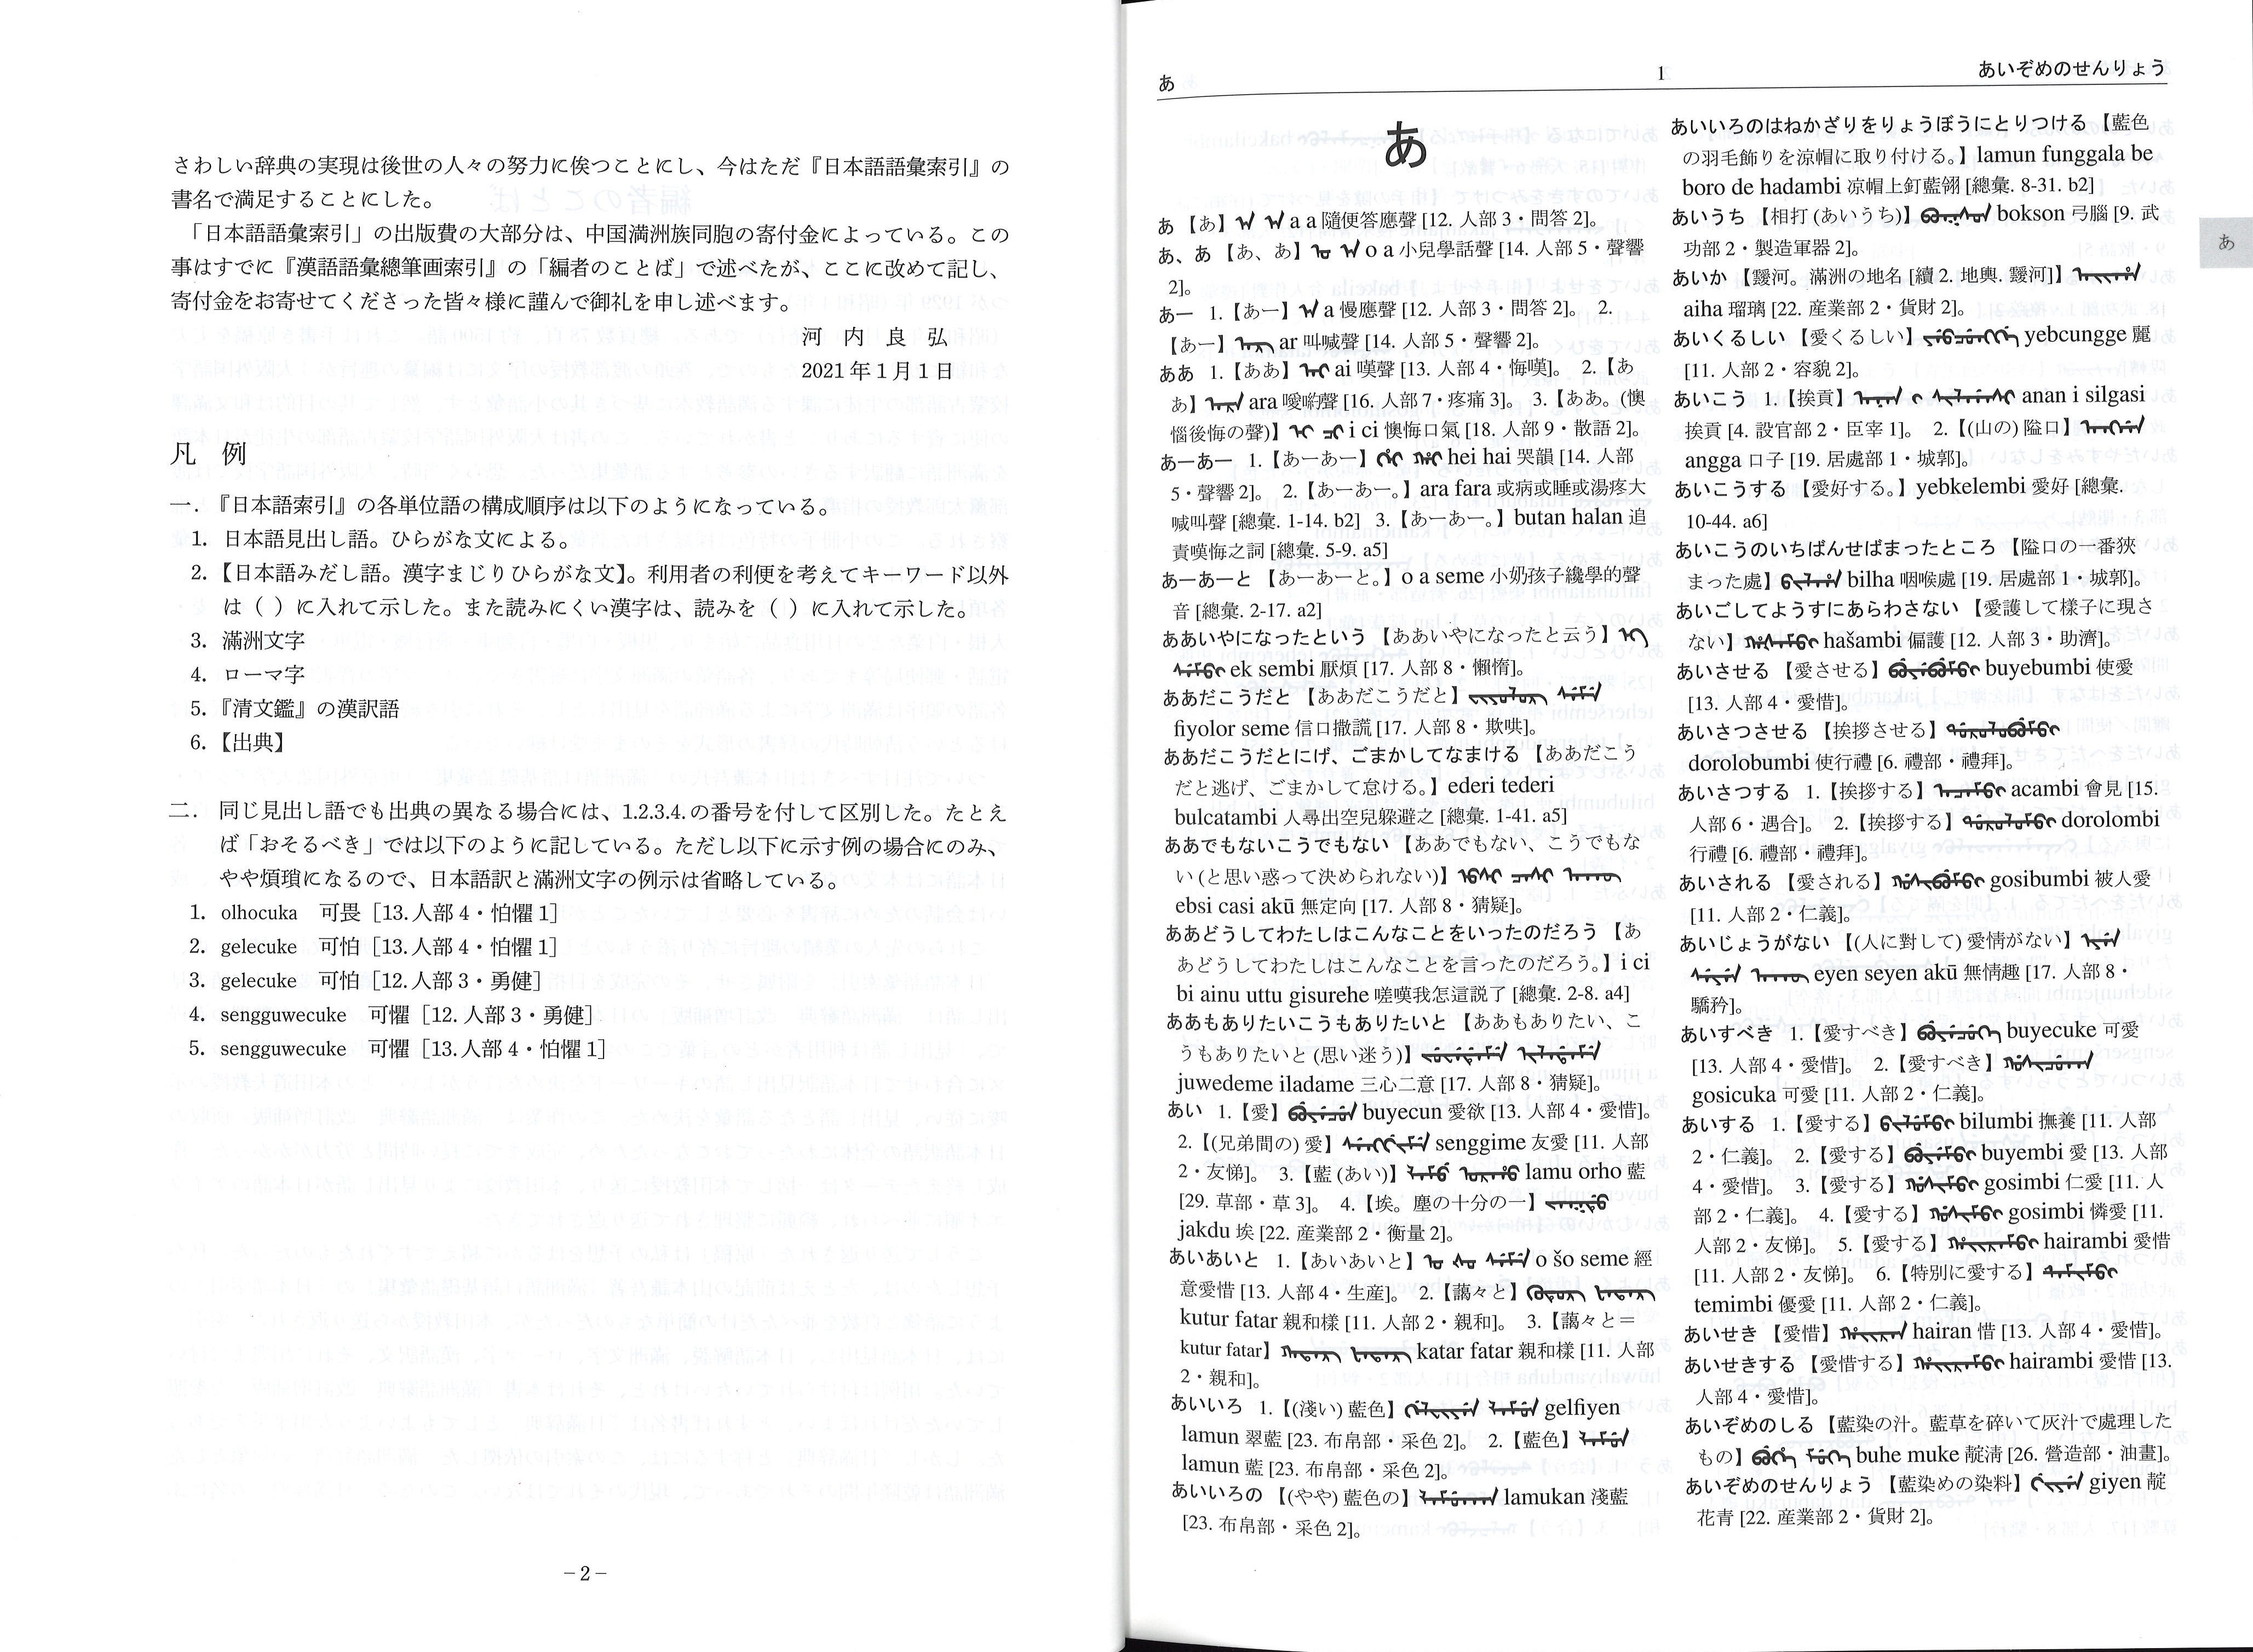 国内書 満洲語辞典 日本語語彙索引 中国 本の情報館 東方書店